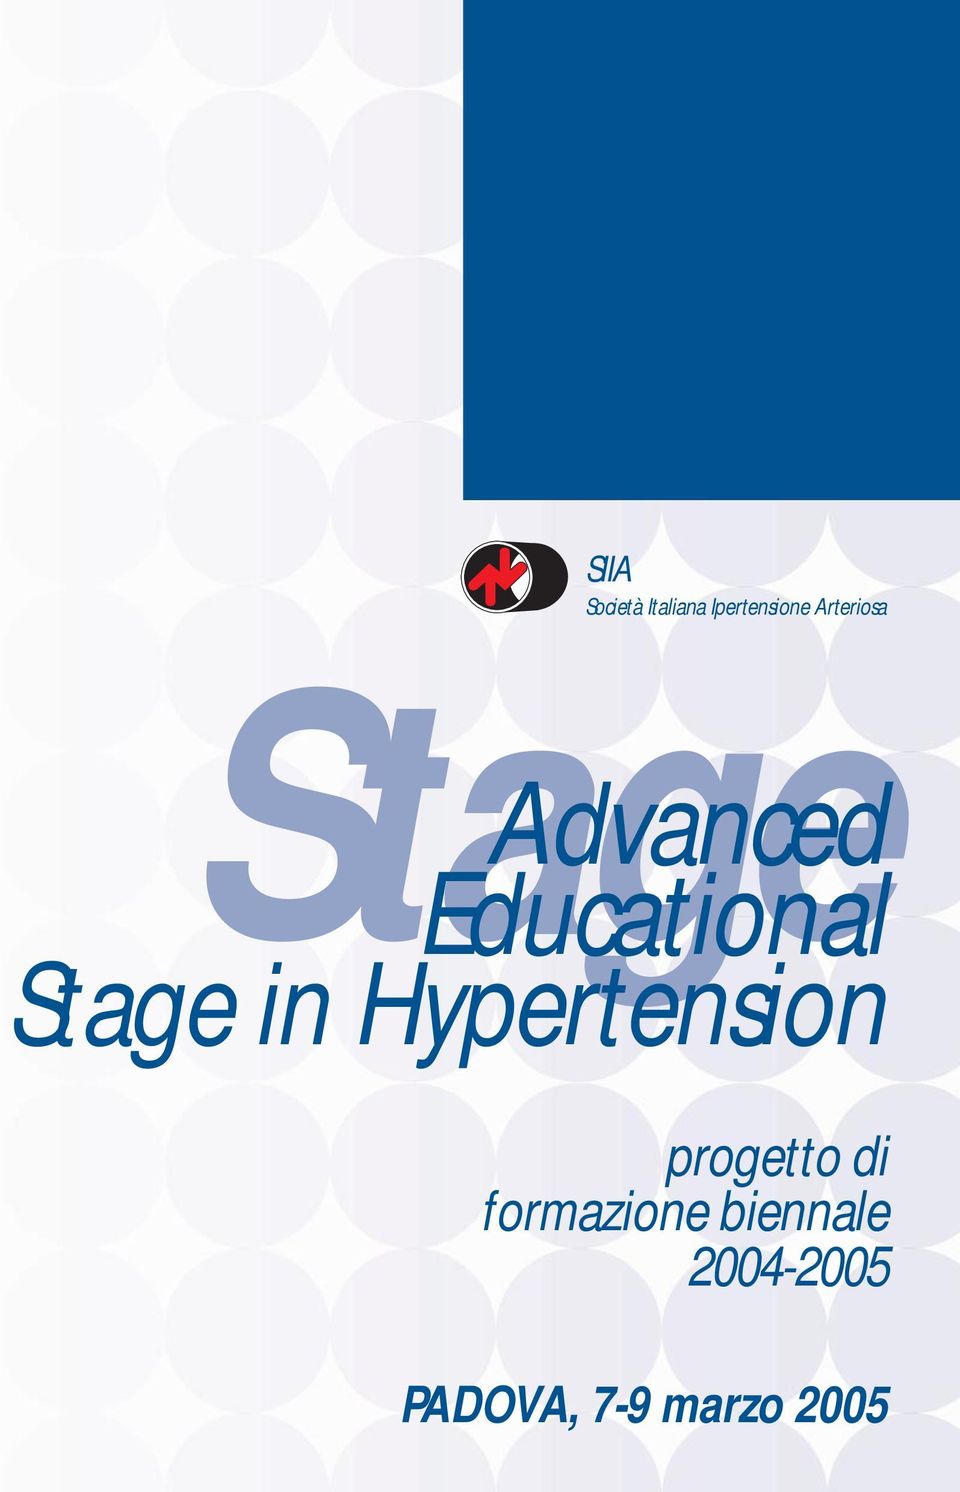 Stage in Hypertension progetto di